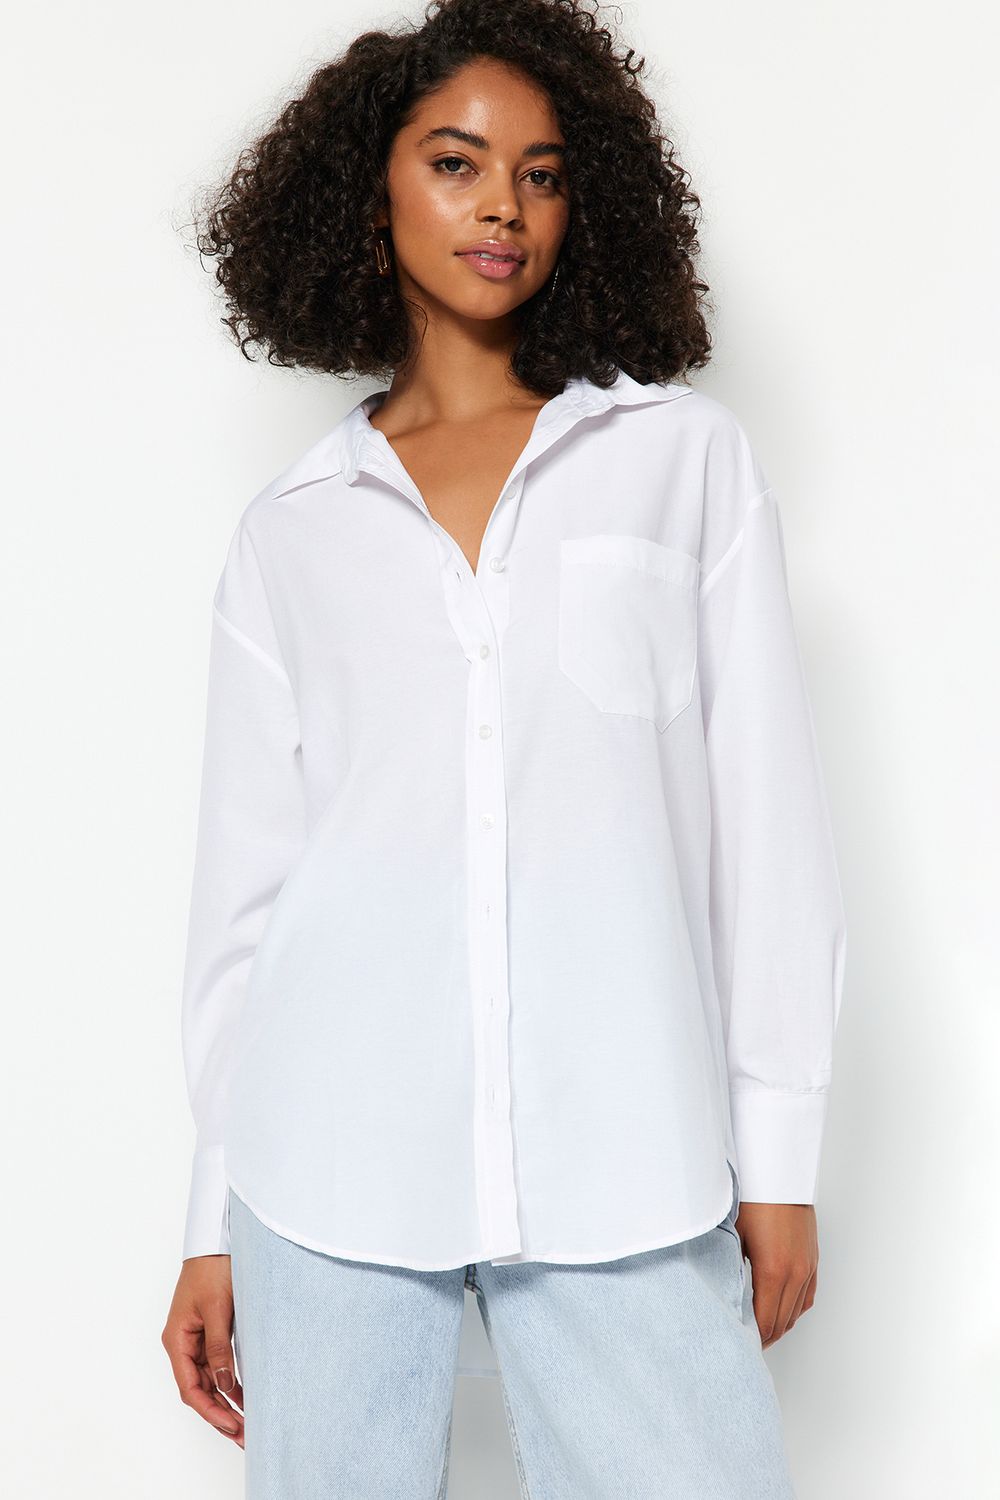 Women's Shirts  Easy Ordering & Stylish - Trendyol